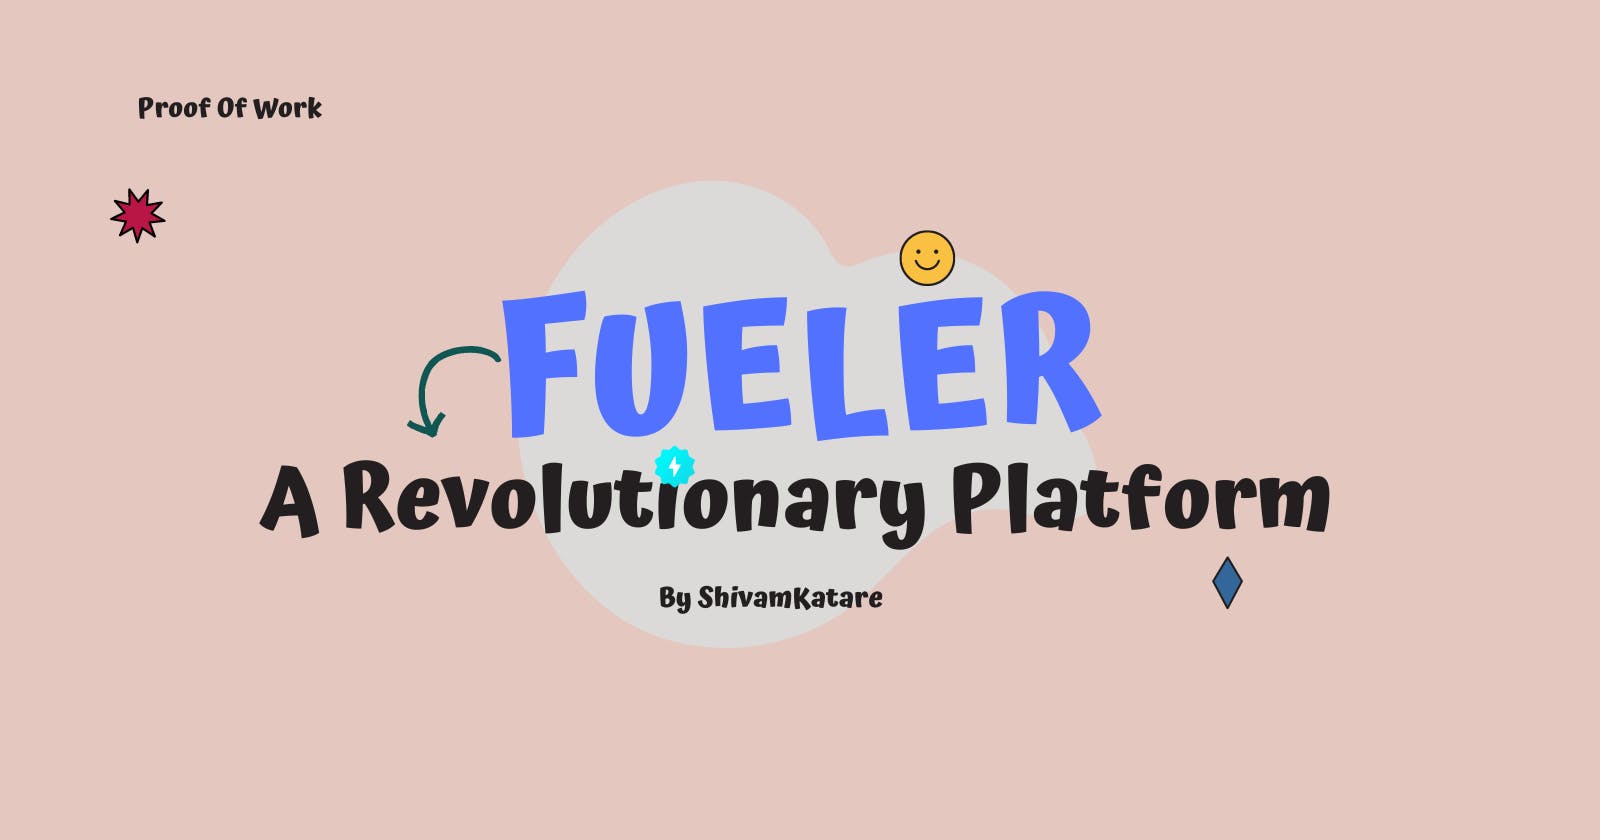 Fueler: A Revolutionary Platform